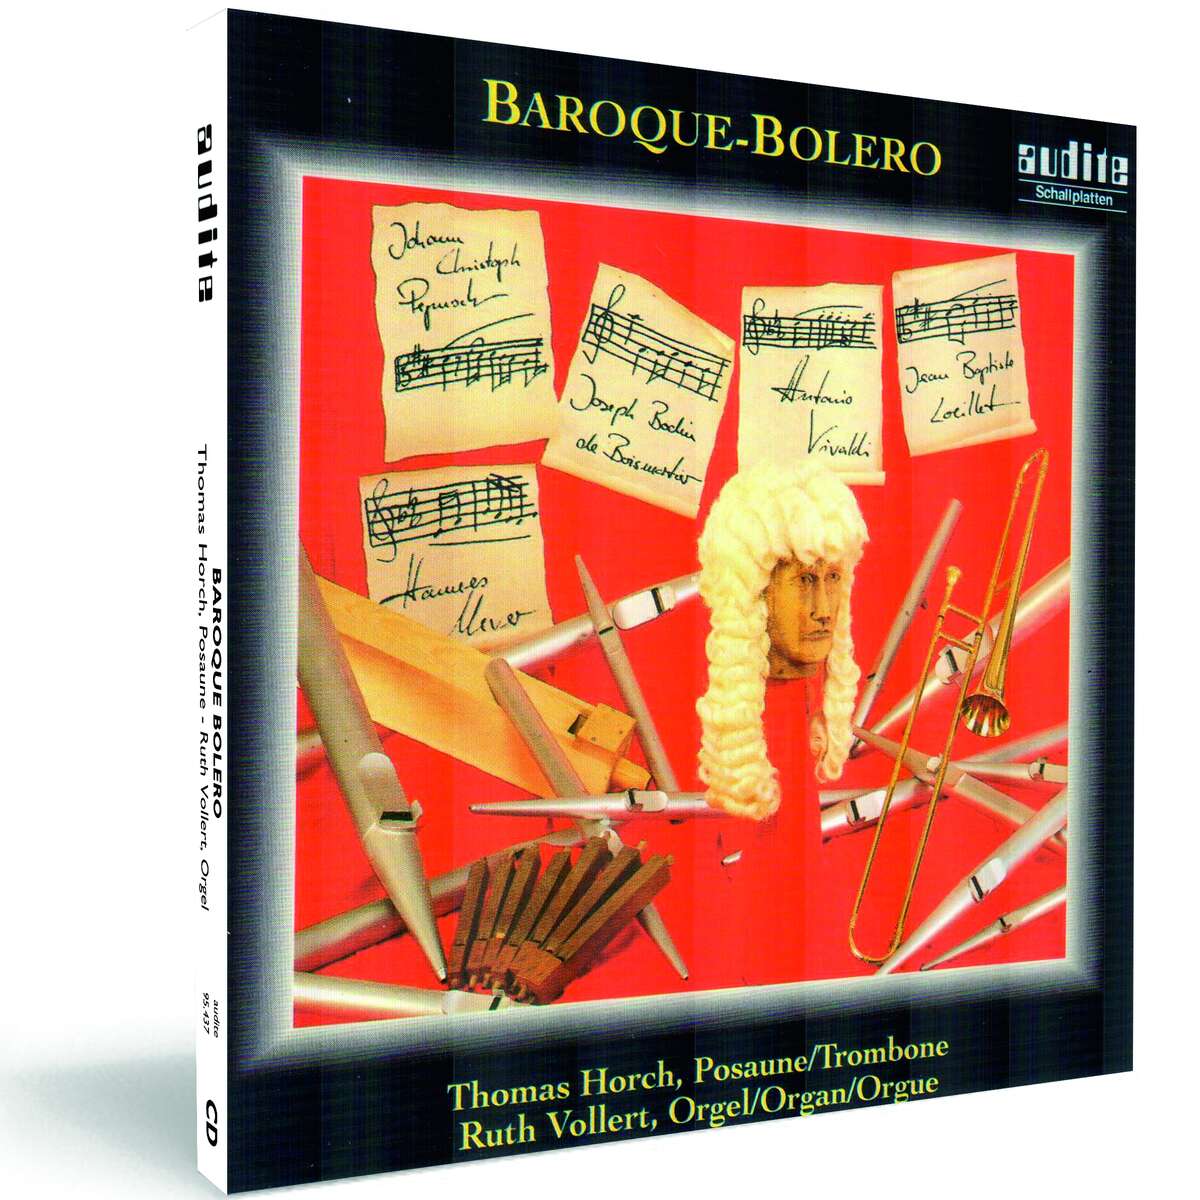 Baroque-Bolero–Baroque Music for Trombone and... - audite